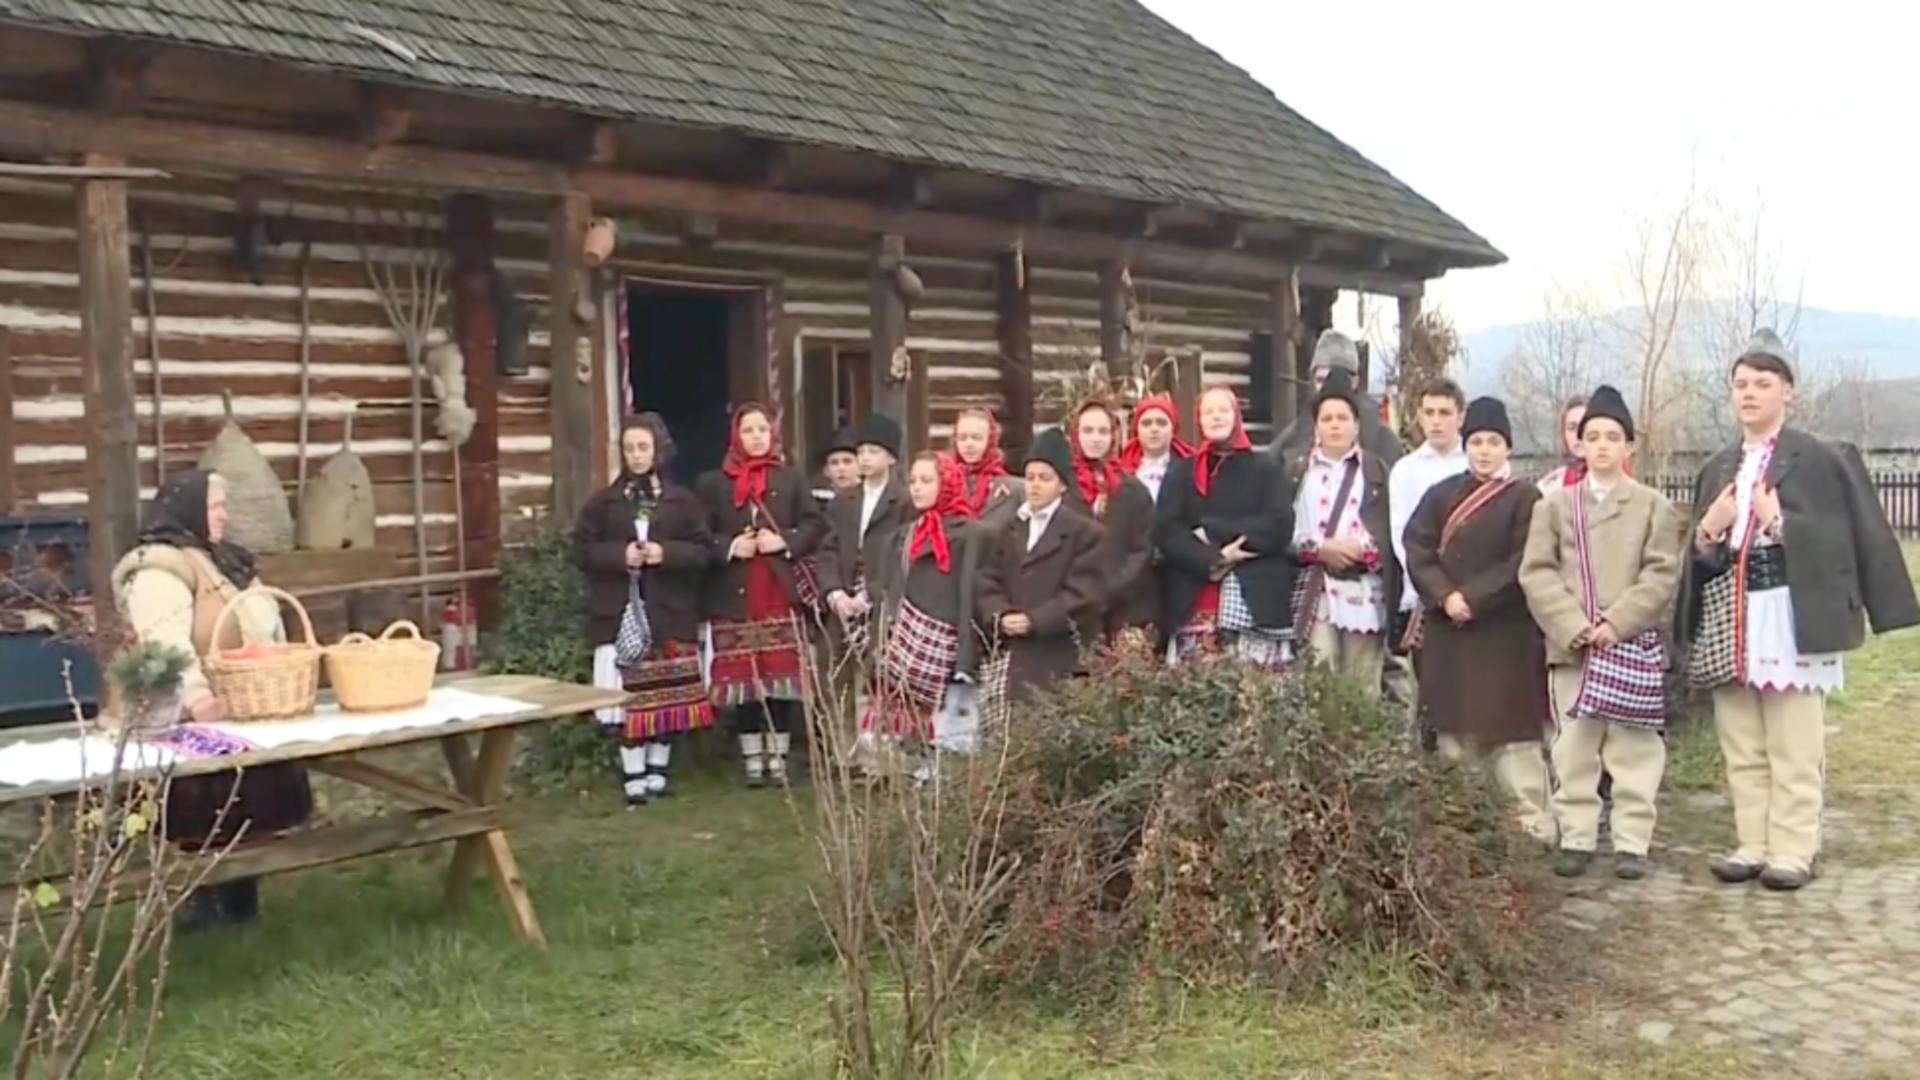 Magie în Țara Lăpușului, de Crăciun: tinerii duc tradiția mai departe în Maramureș – VIDEO